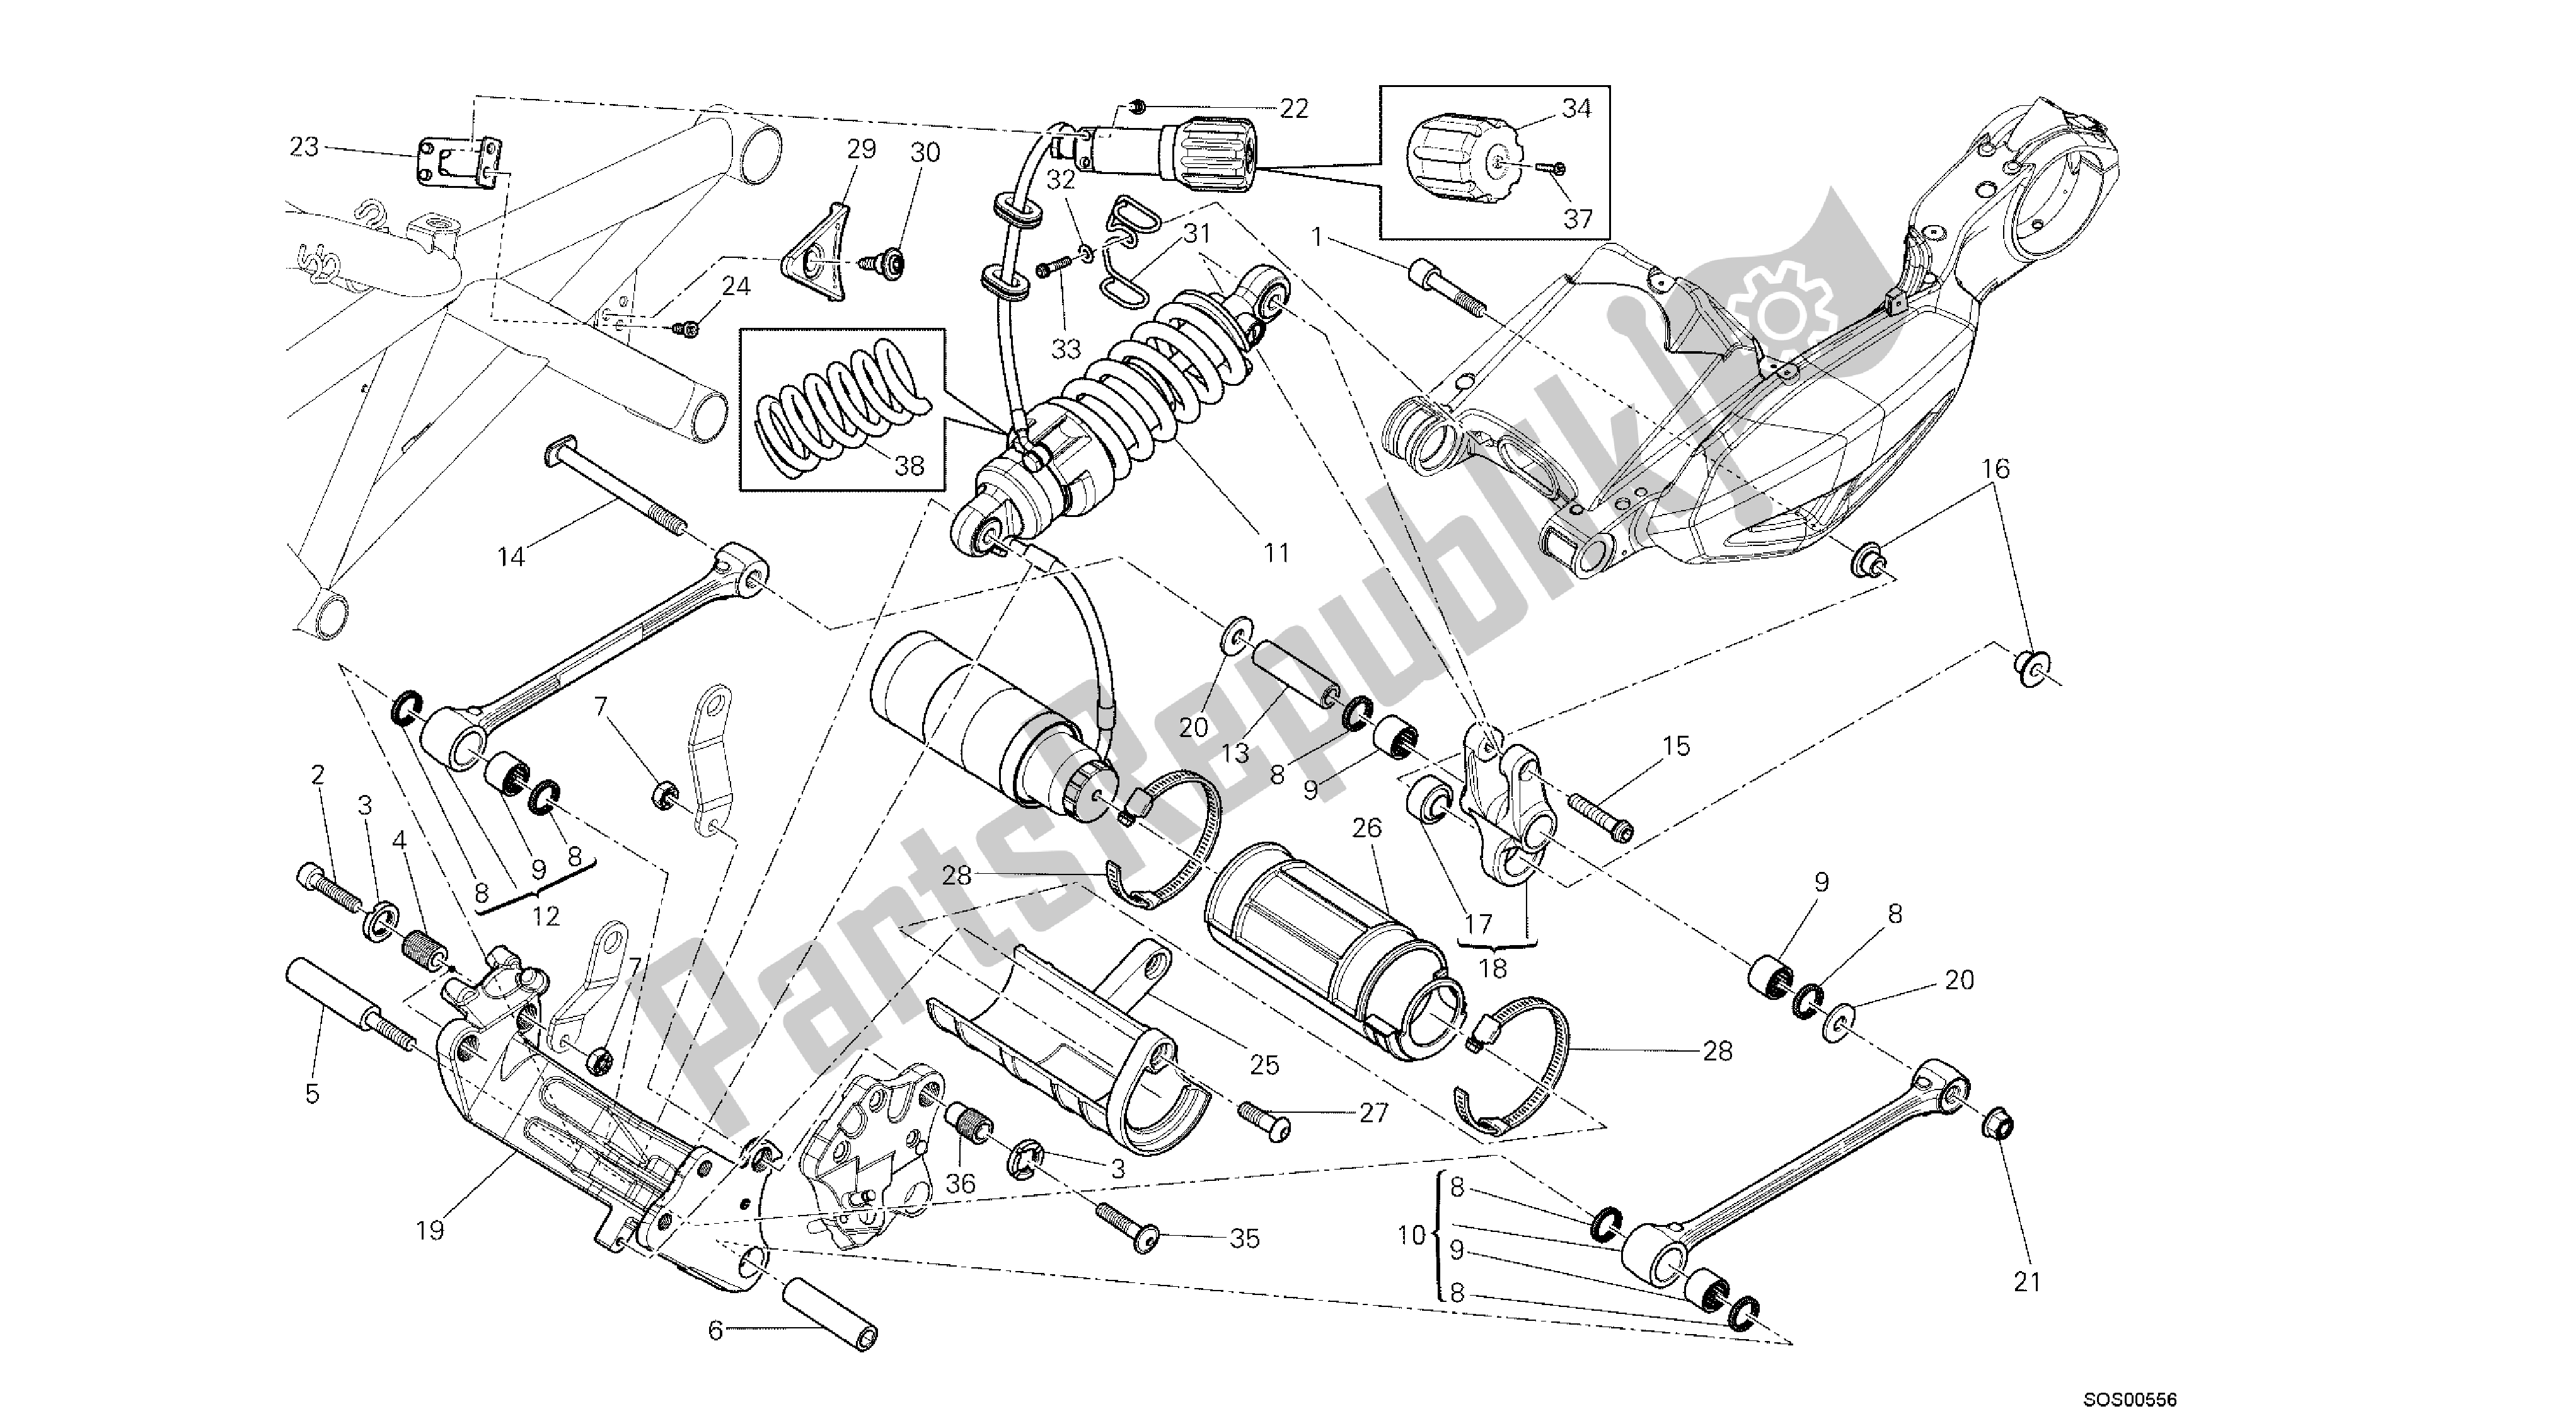 Alle onderdelen voor de Tekening 028 - Achterschokbreker [mod: Dvl; Xs T: A Us, Bra, Ch N, E Ur, F Ra, Jap, Th Ai] Group Fr Ame van de Ducati Diavel 1200 2013